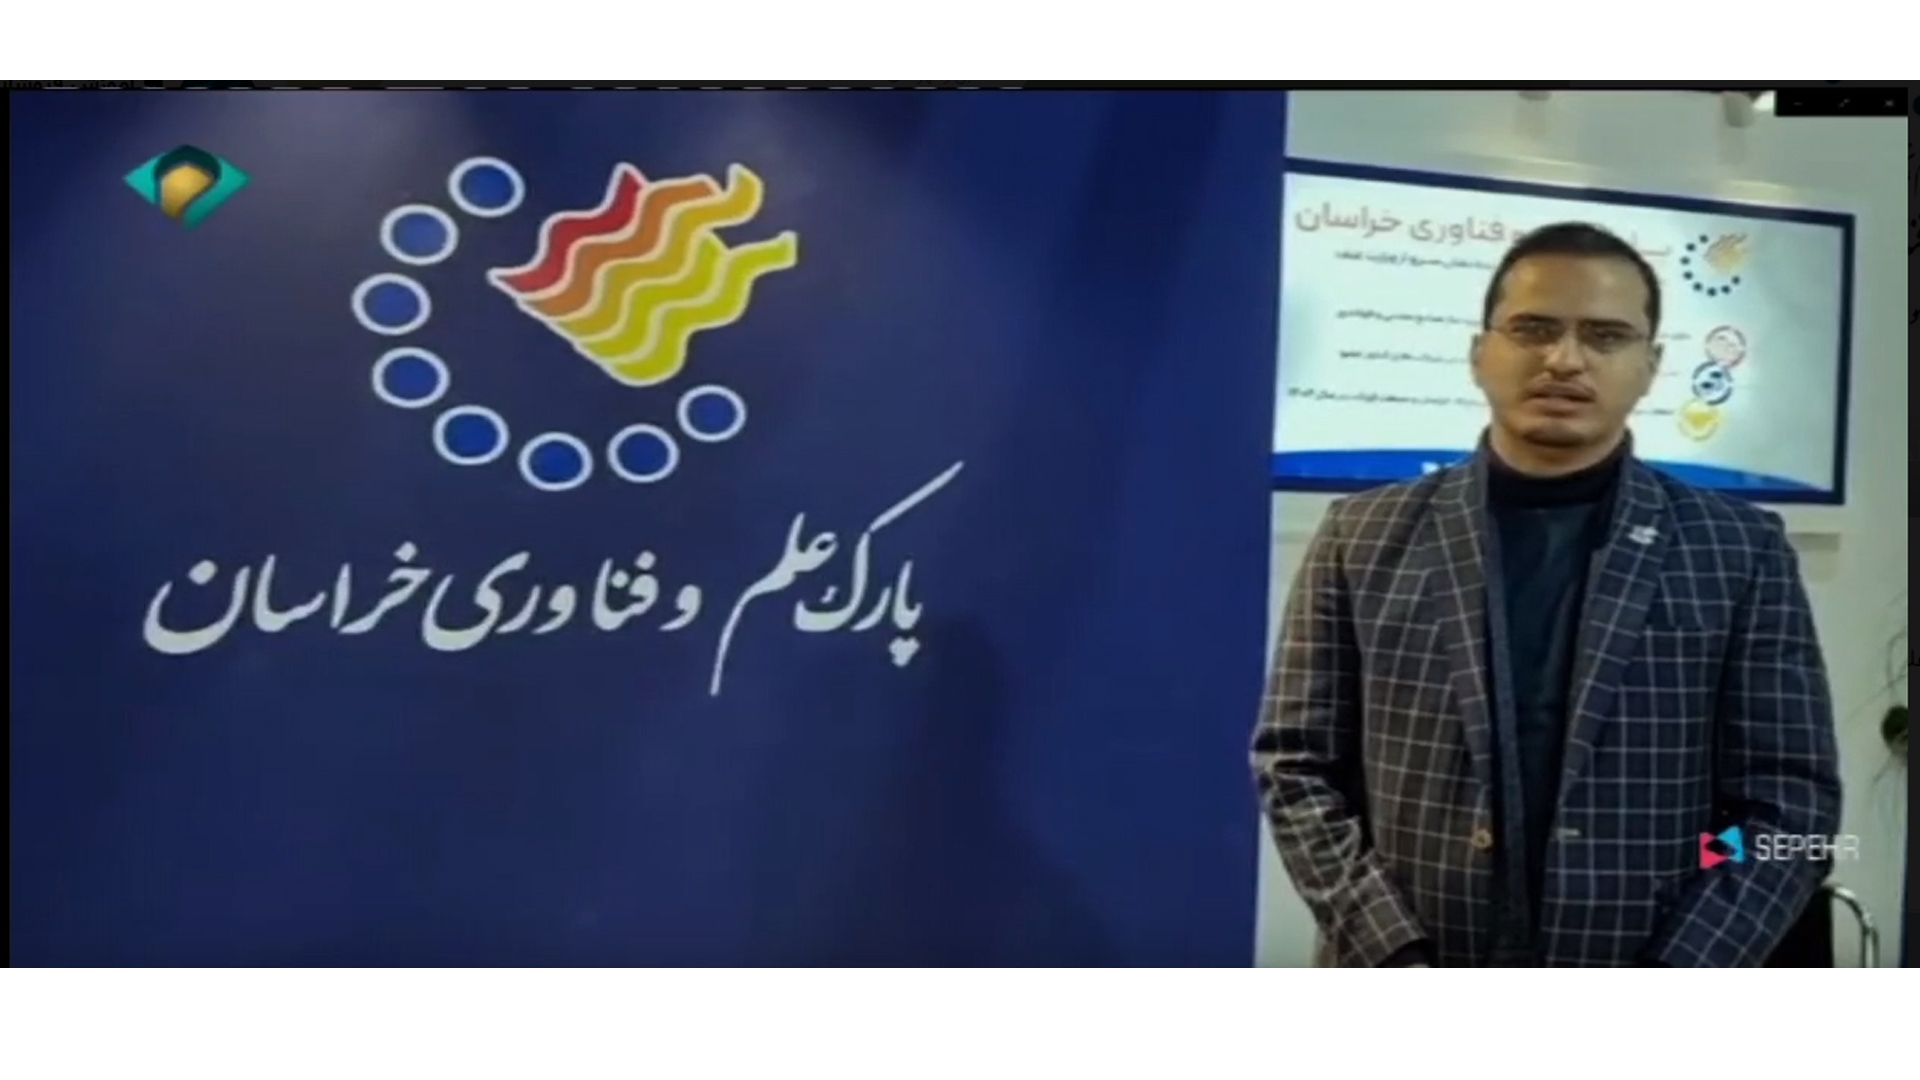 پخش گزارش پنجمین نمایشگاه ملی فولاد ایران در برنامه صبح خراسانی